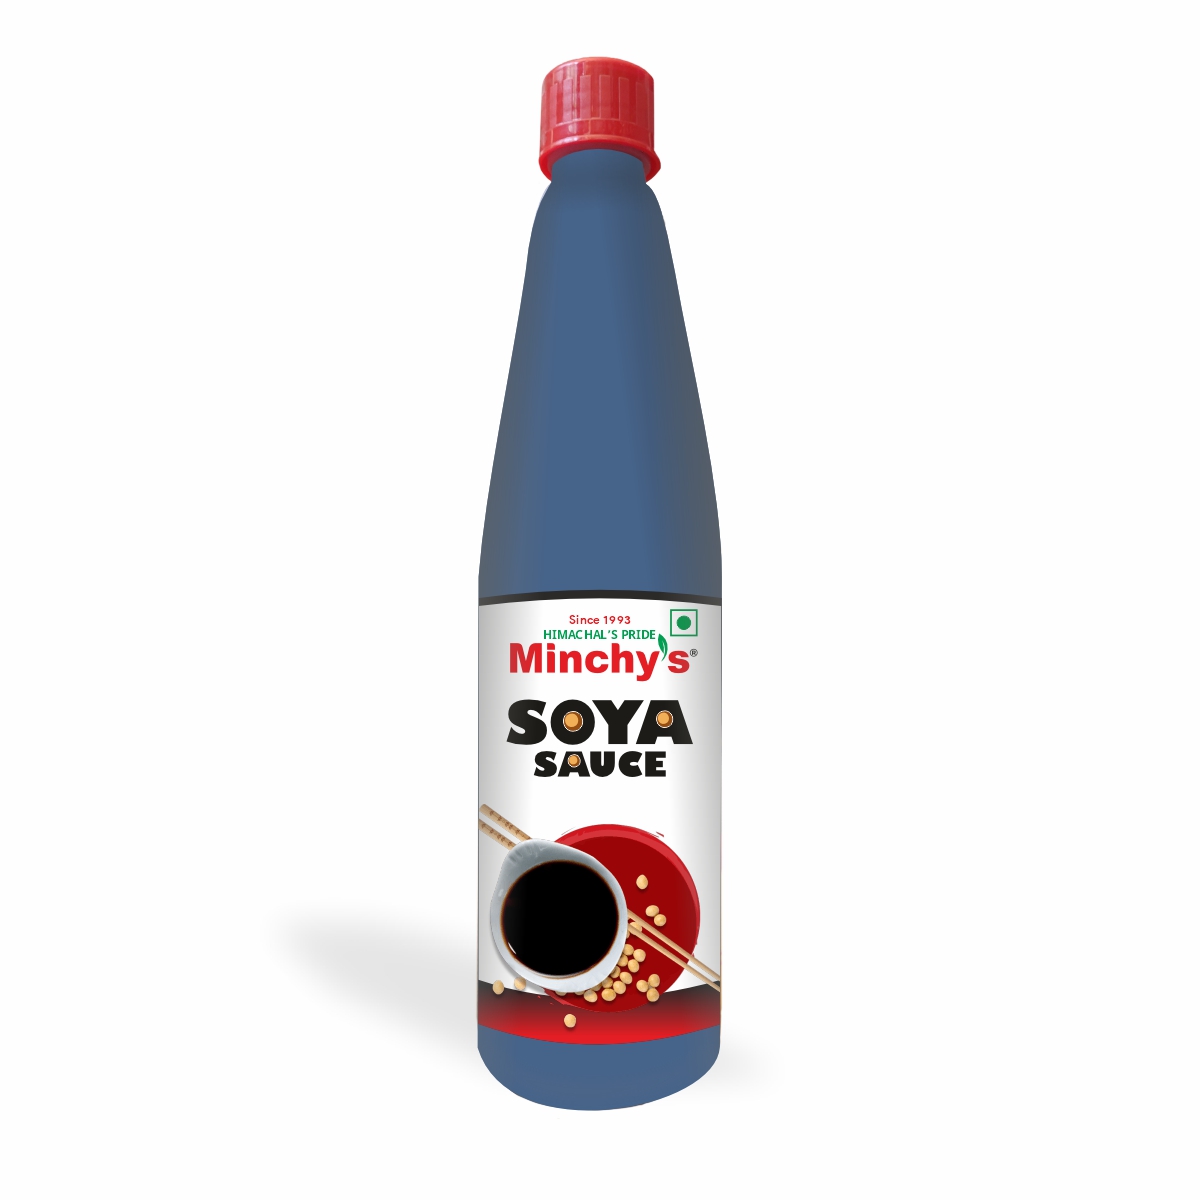 Minchy's Soya Sauce, Soy Sauce